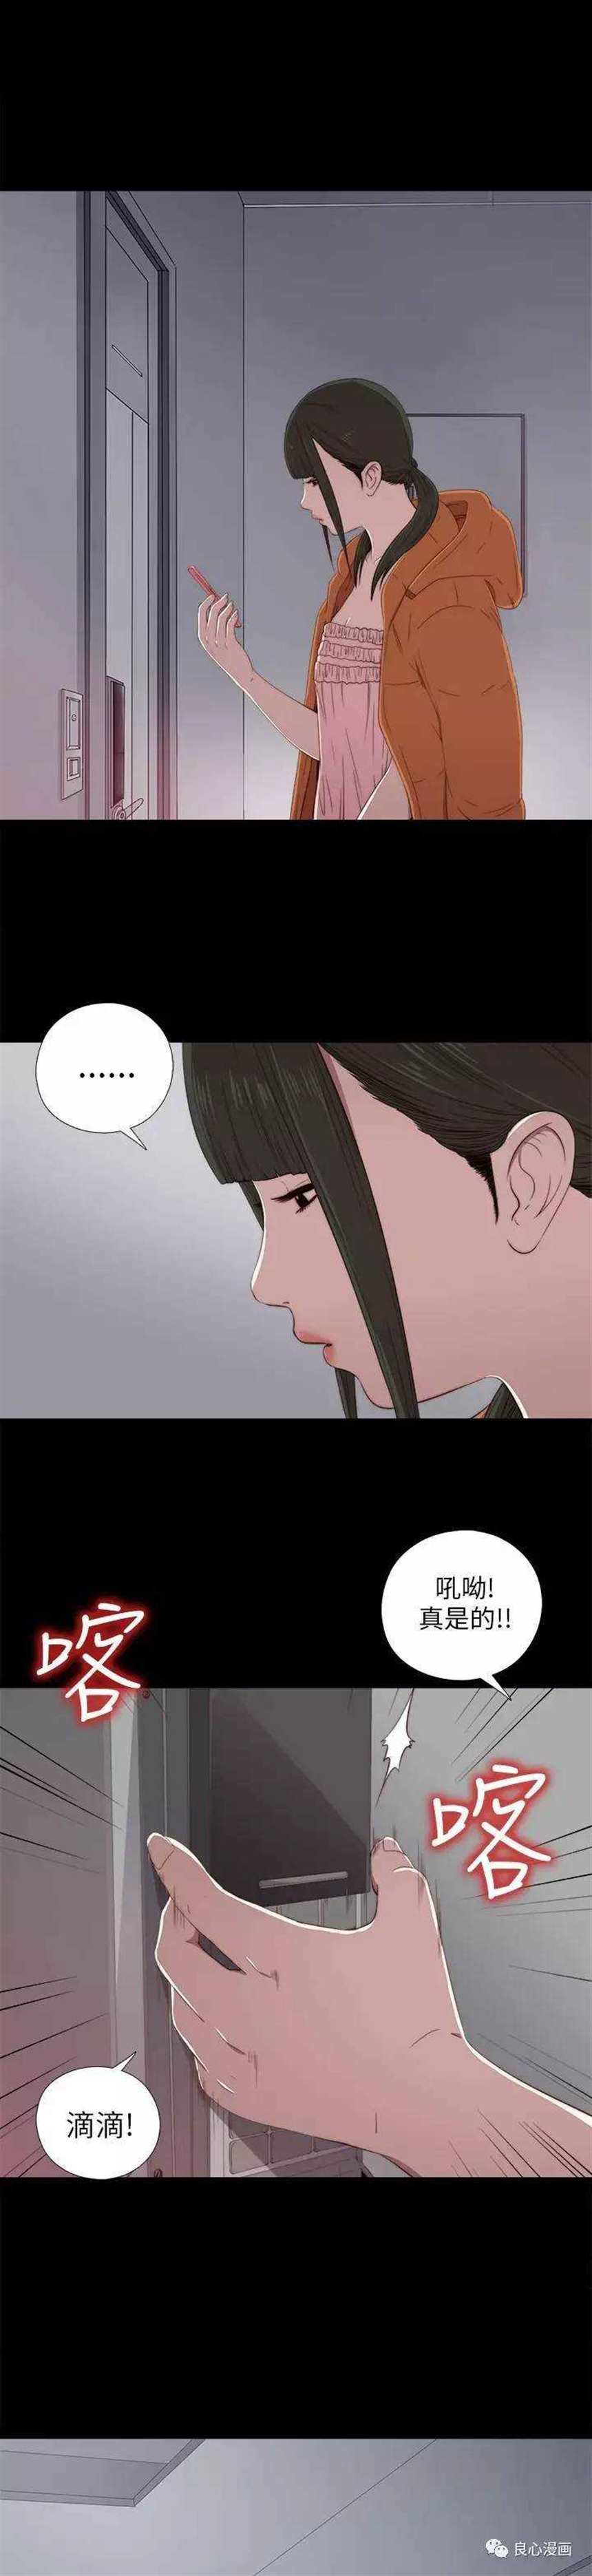 韩国漫画《邻家少女》第20话:你怎么会知道我家房门密码的?免费阅读(点击浏览下一张趣图)